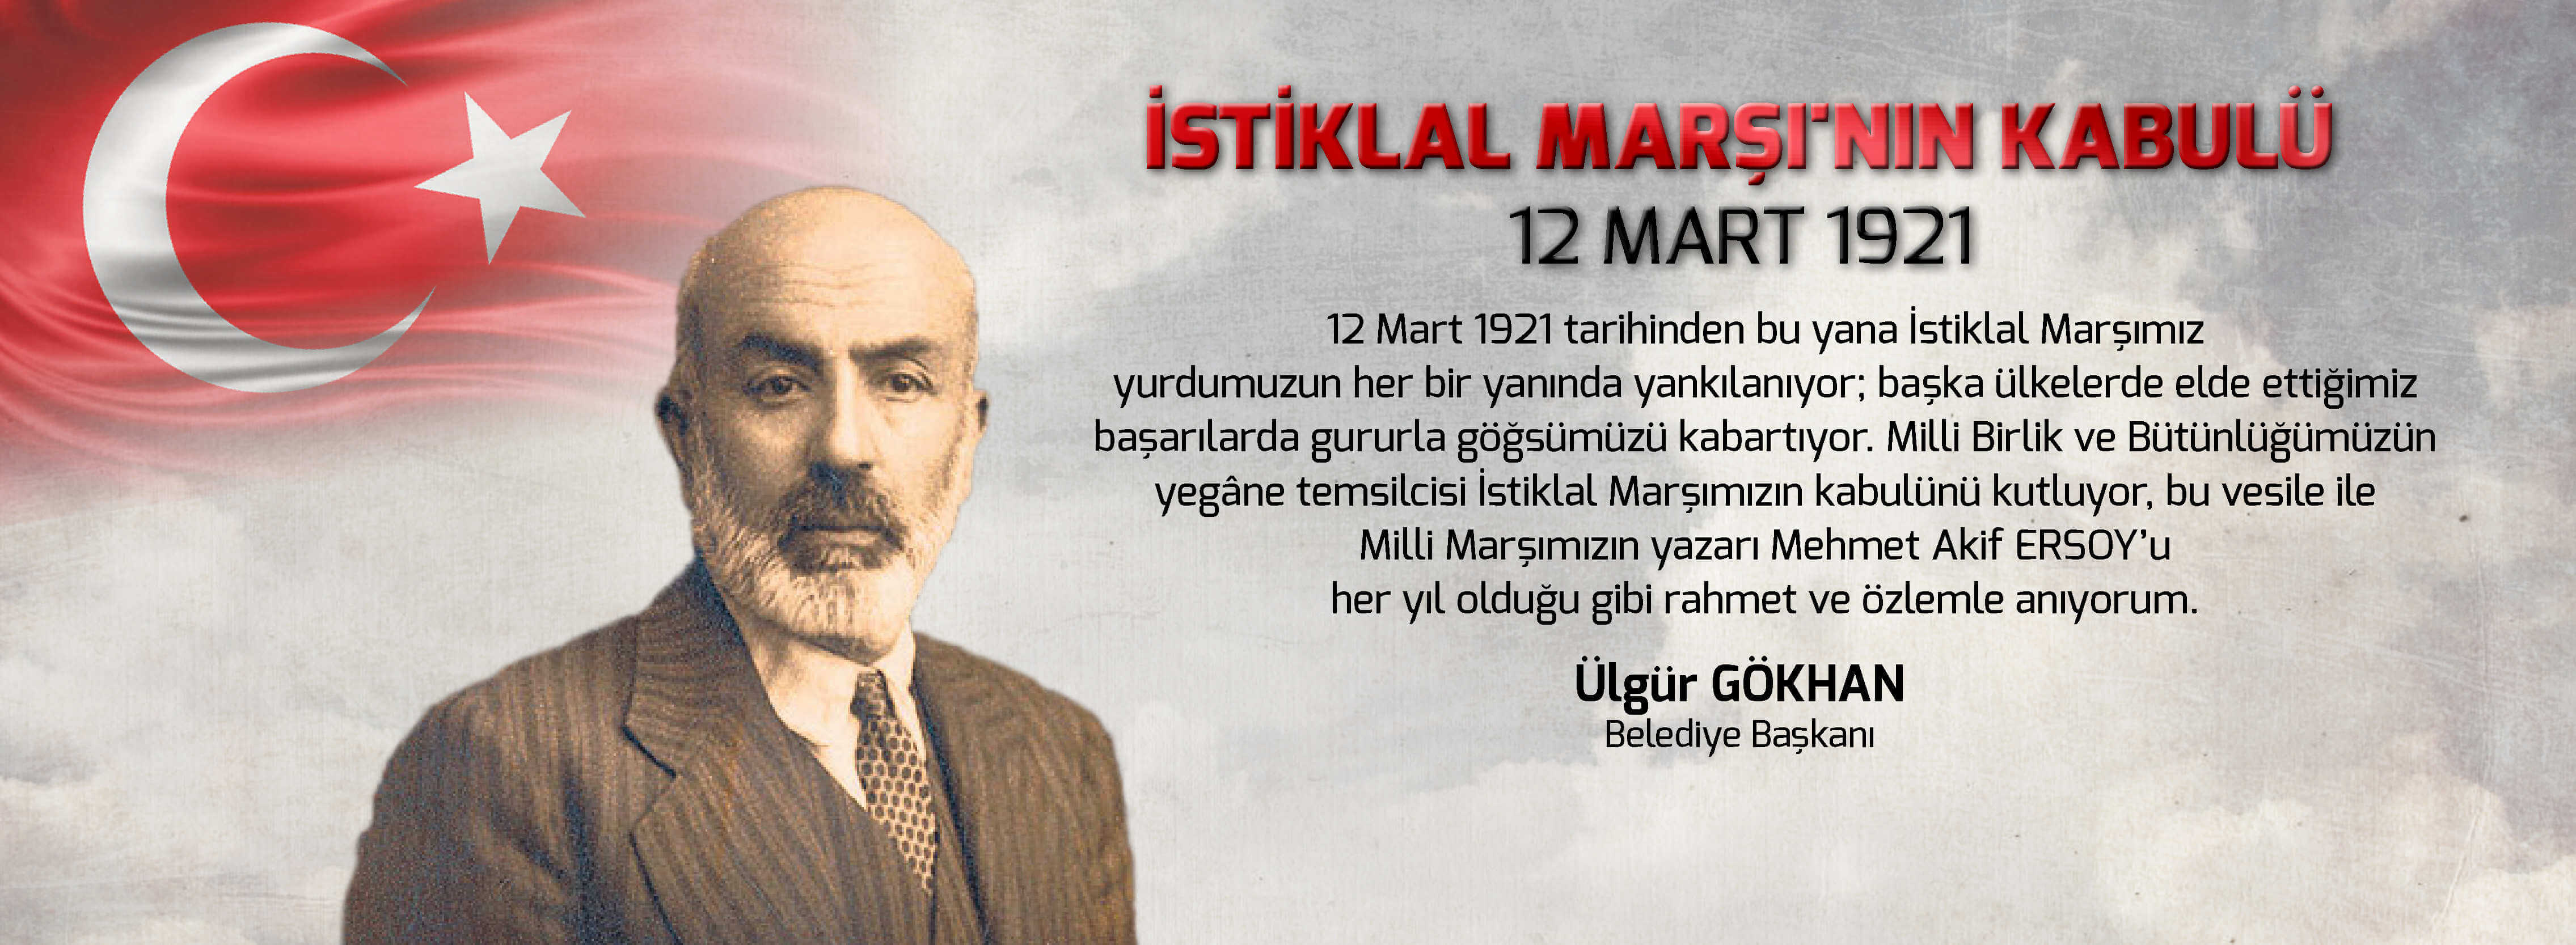 Belediye Başkanı Sayın Ülgür Gökhan'ın İstiklal Marşı'nın Kabulünün Yıl Dönümü Kutlama Mesajı...